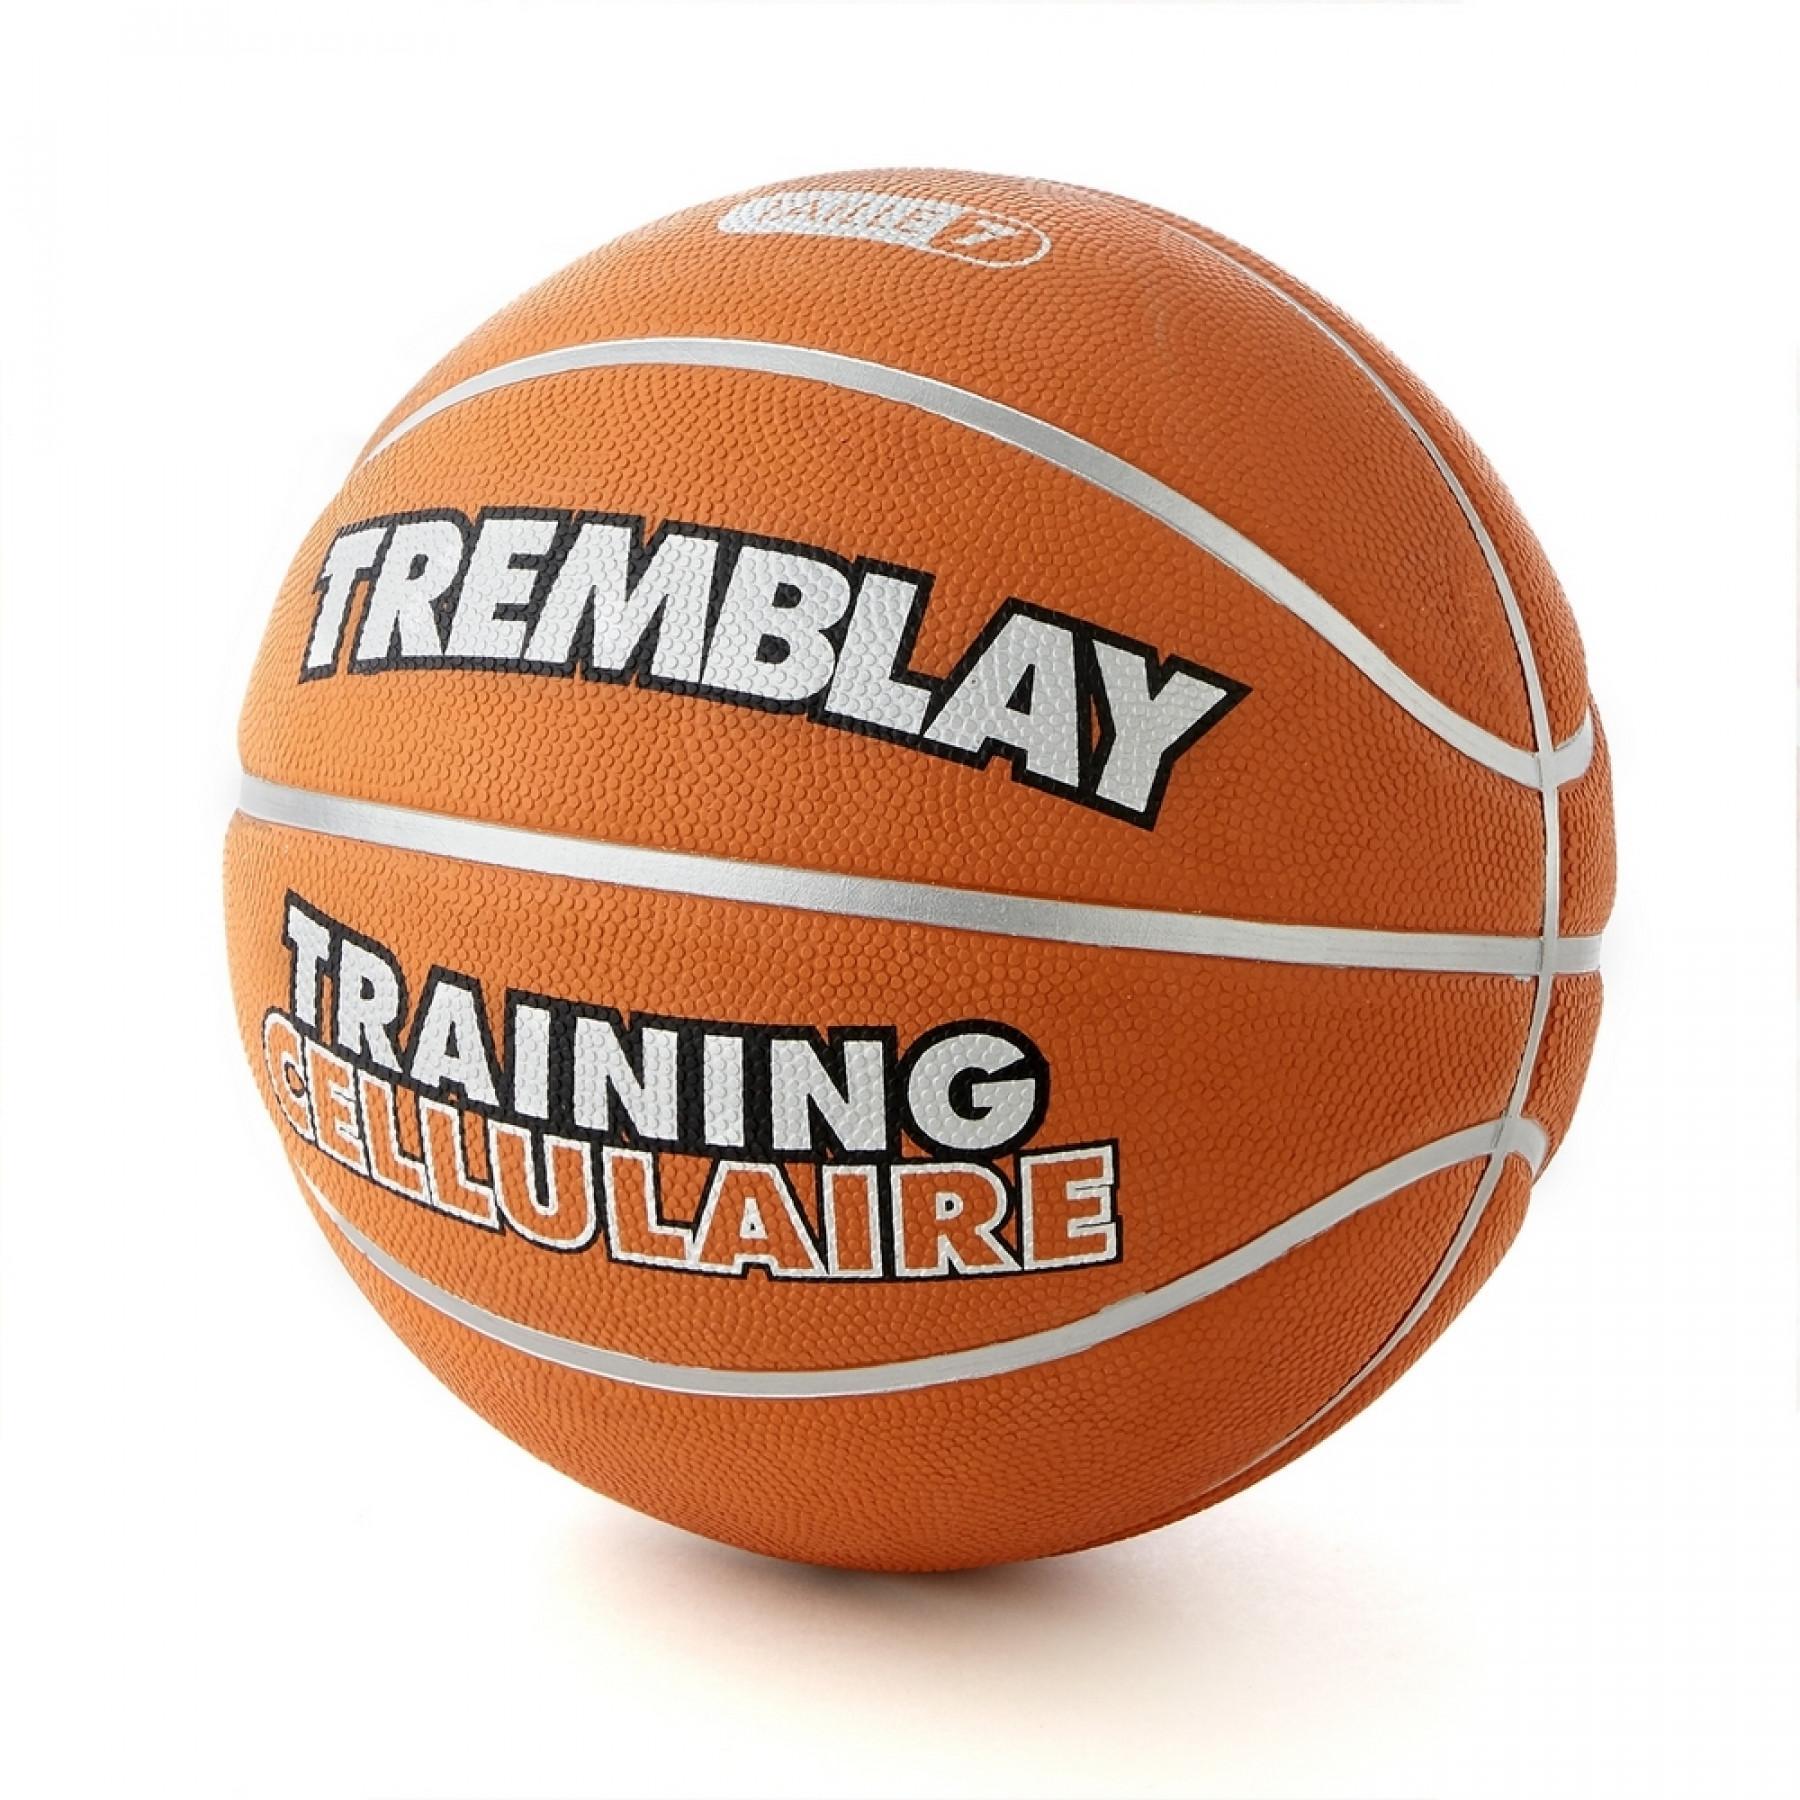 Tremblay cellulär träningsboll